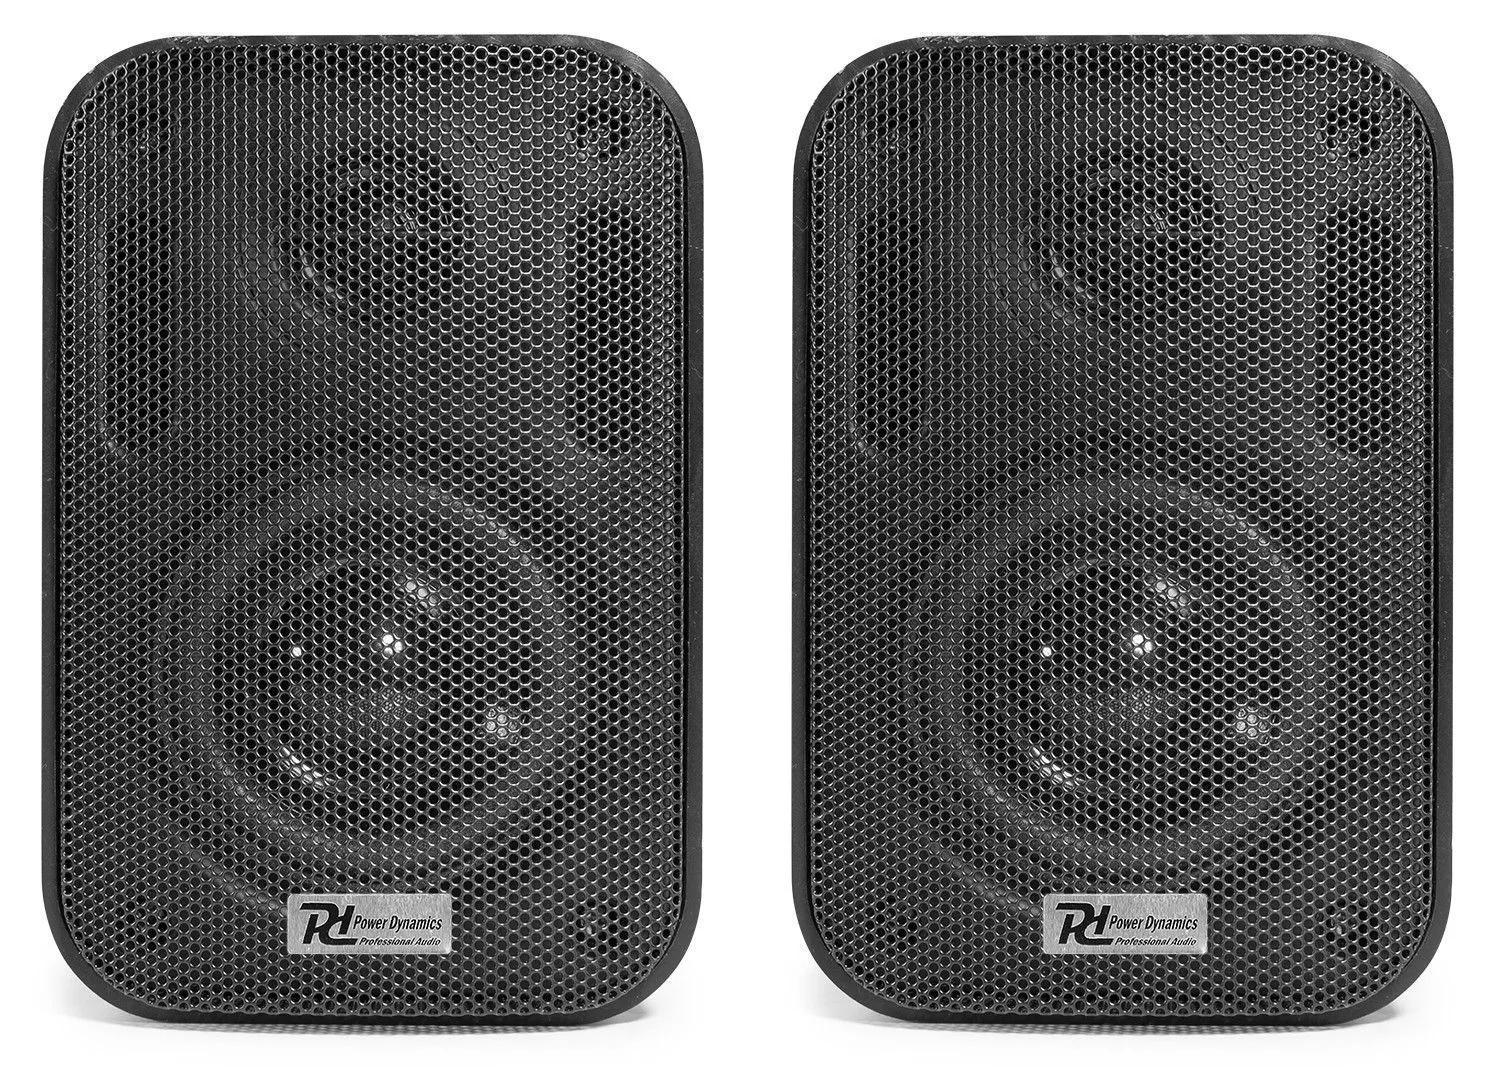 Zwart retourdeals installatie speakers